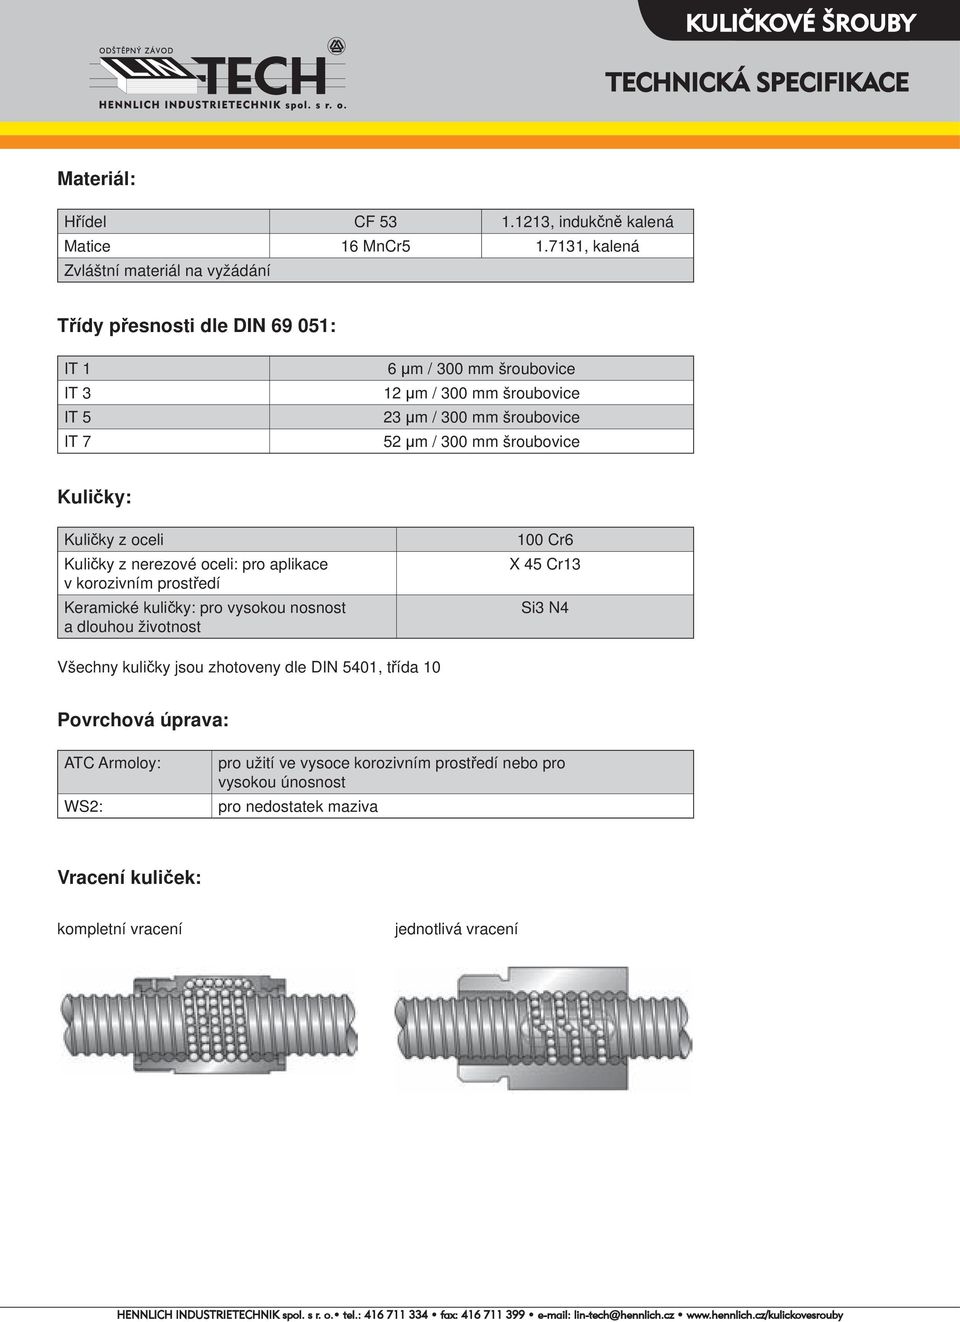 52 μm / 300 mm šroubovice Kuličky: Kuličky z oceli Kuličky z nerezové oceli: pro aplikace v korozivním prostředí Keramické kuličky: pro vysokou nosnost a dlouhou životnost